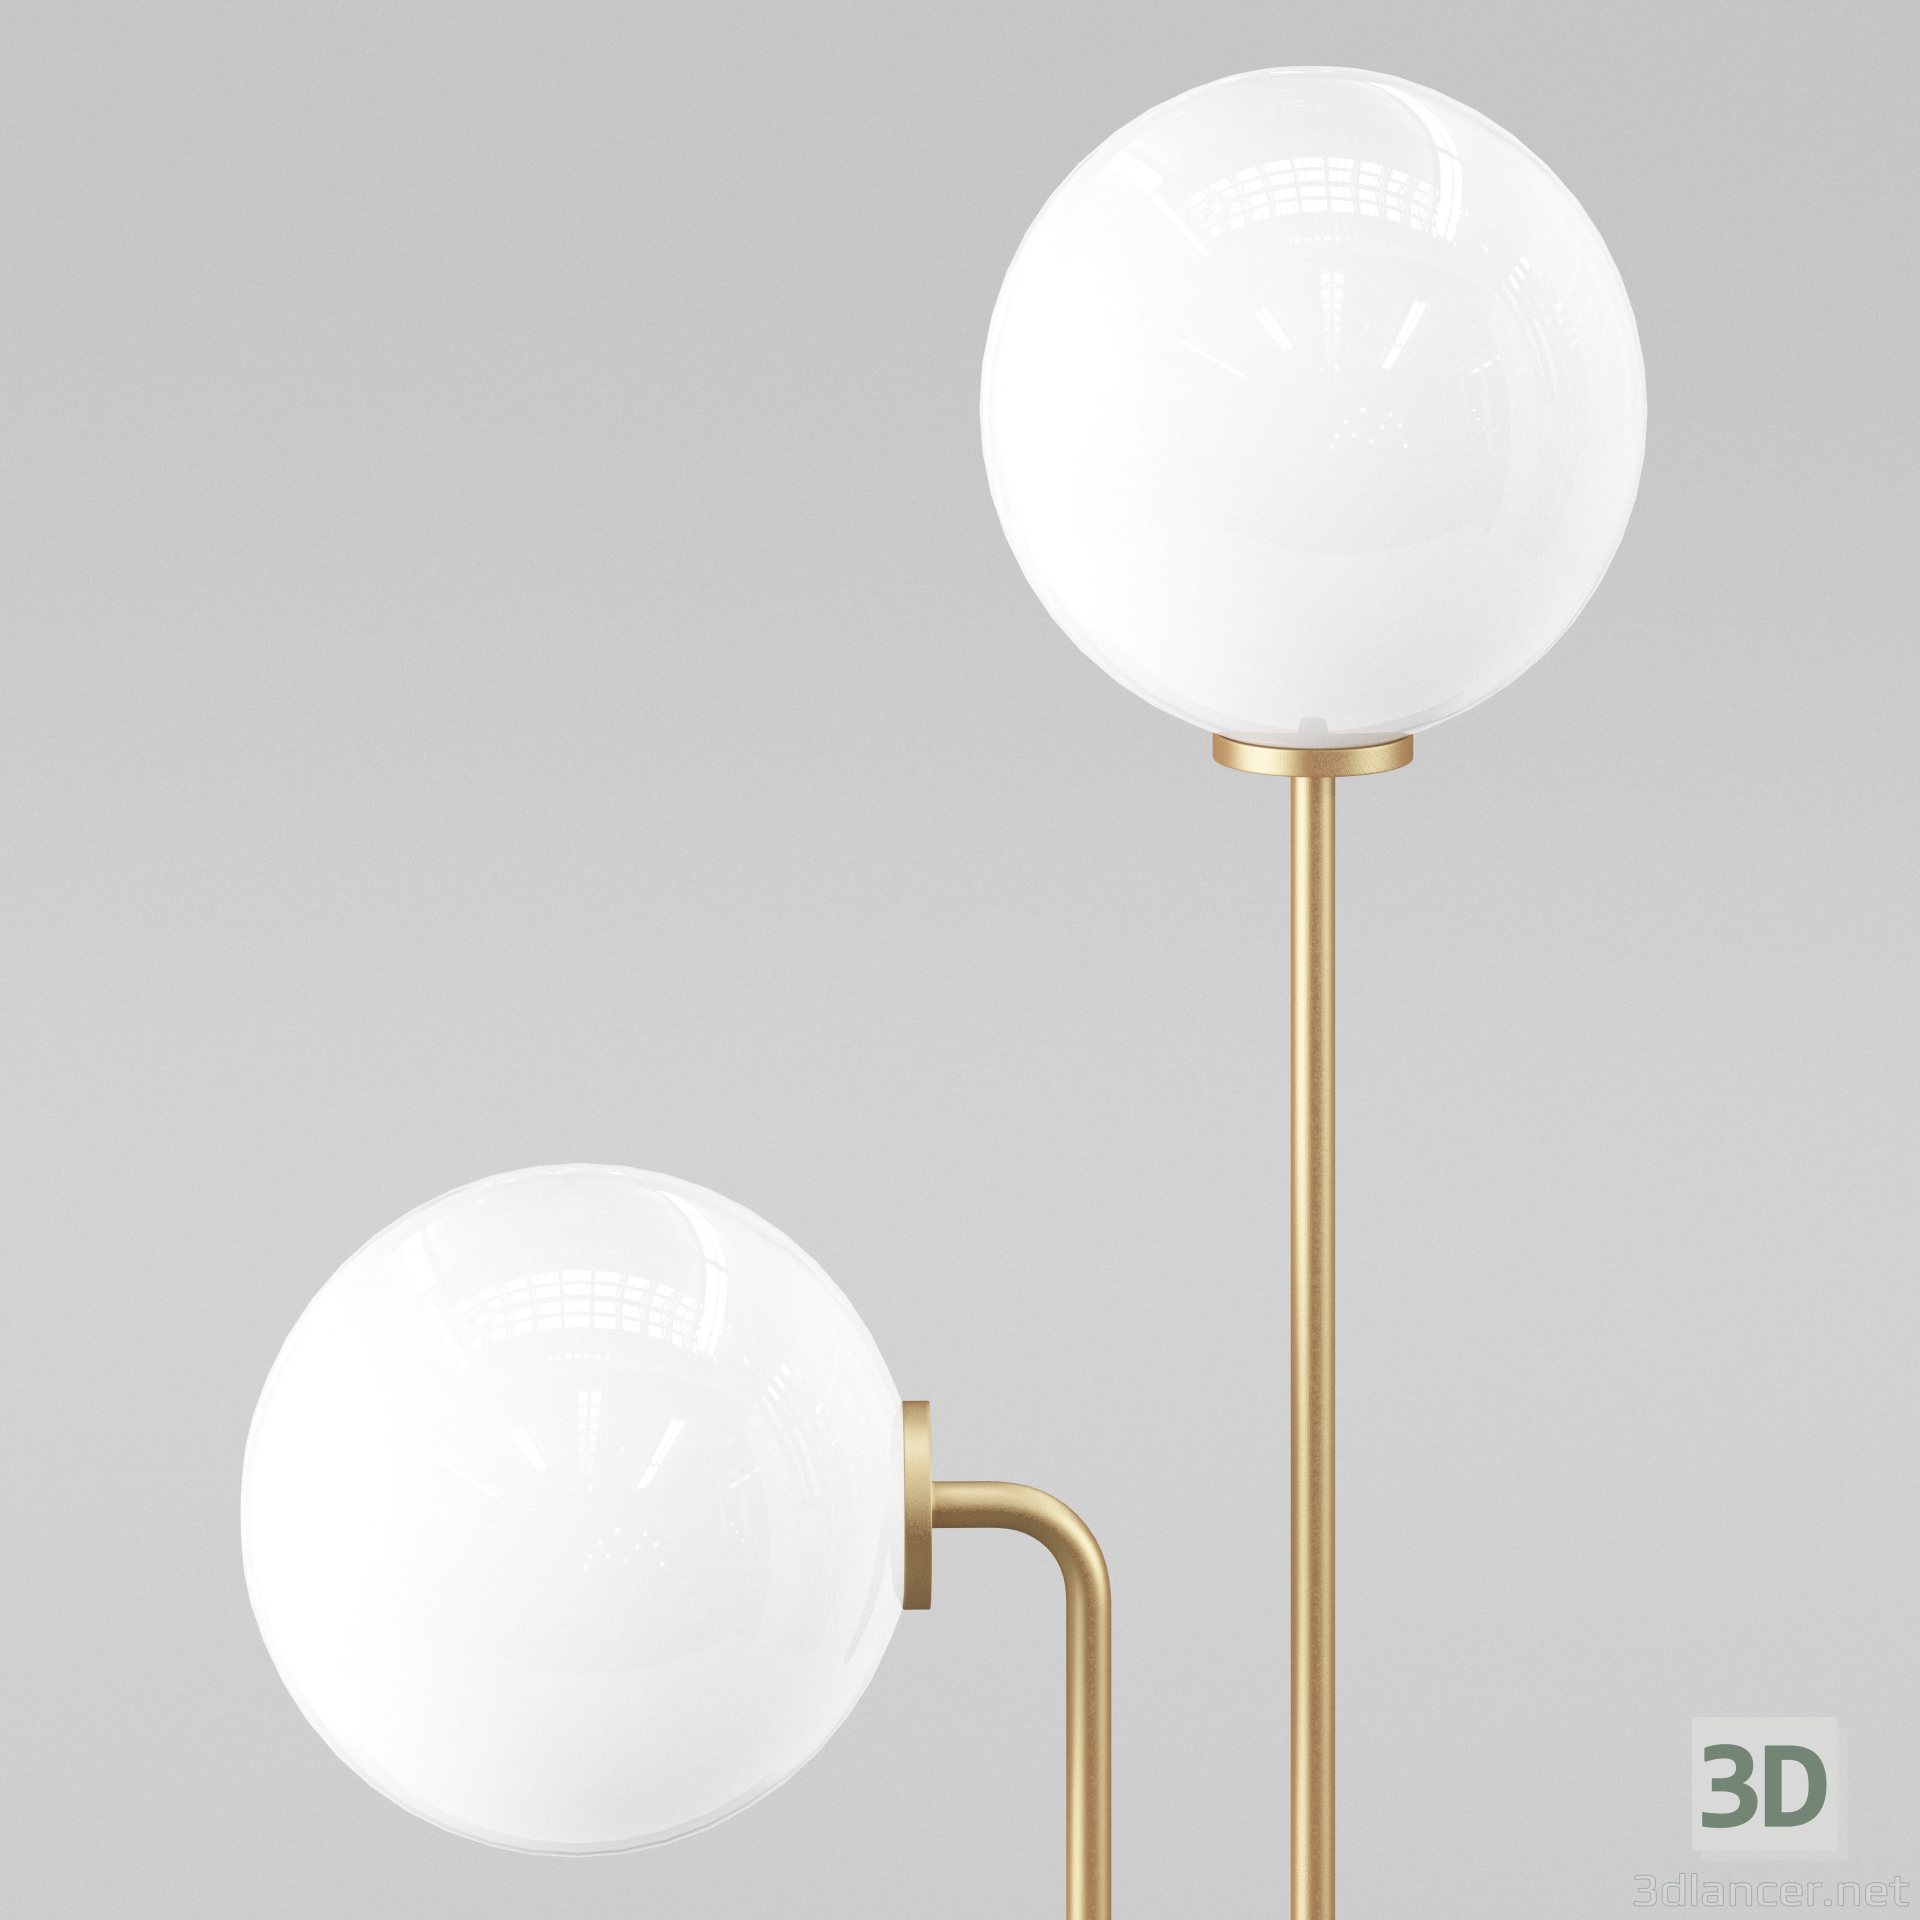 3D portland zemin lambası modeli satın - render